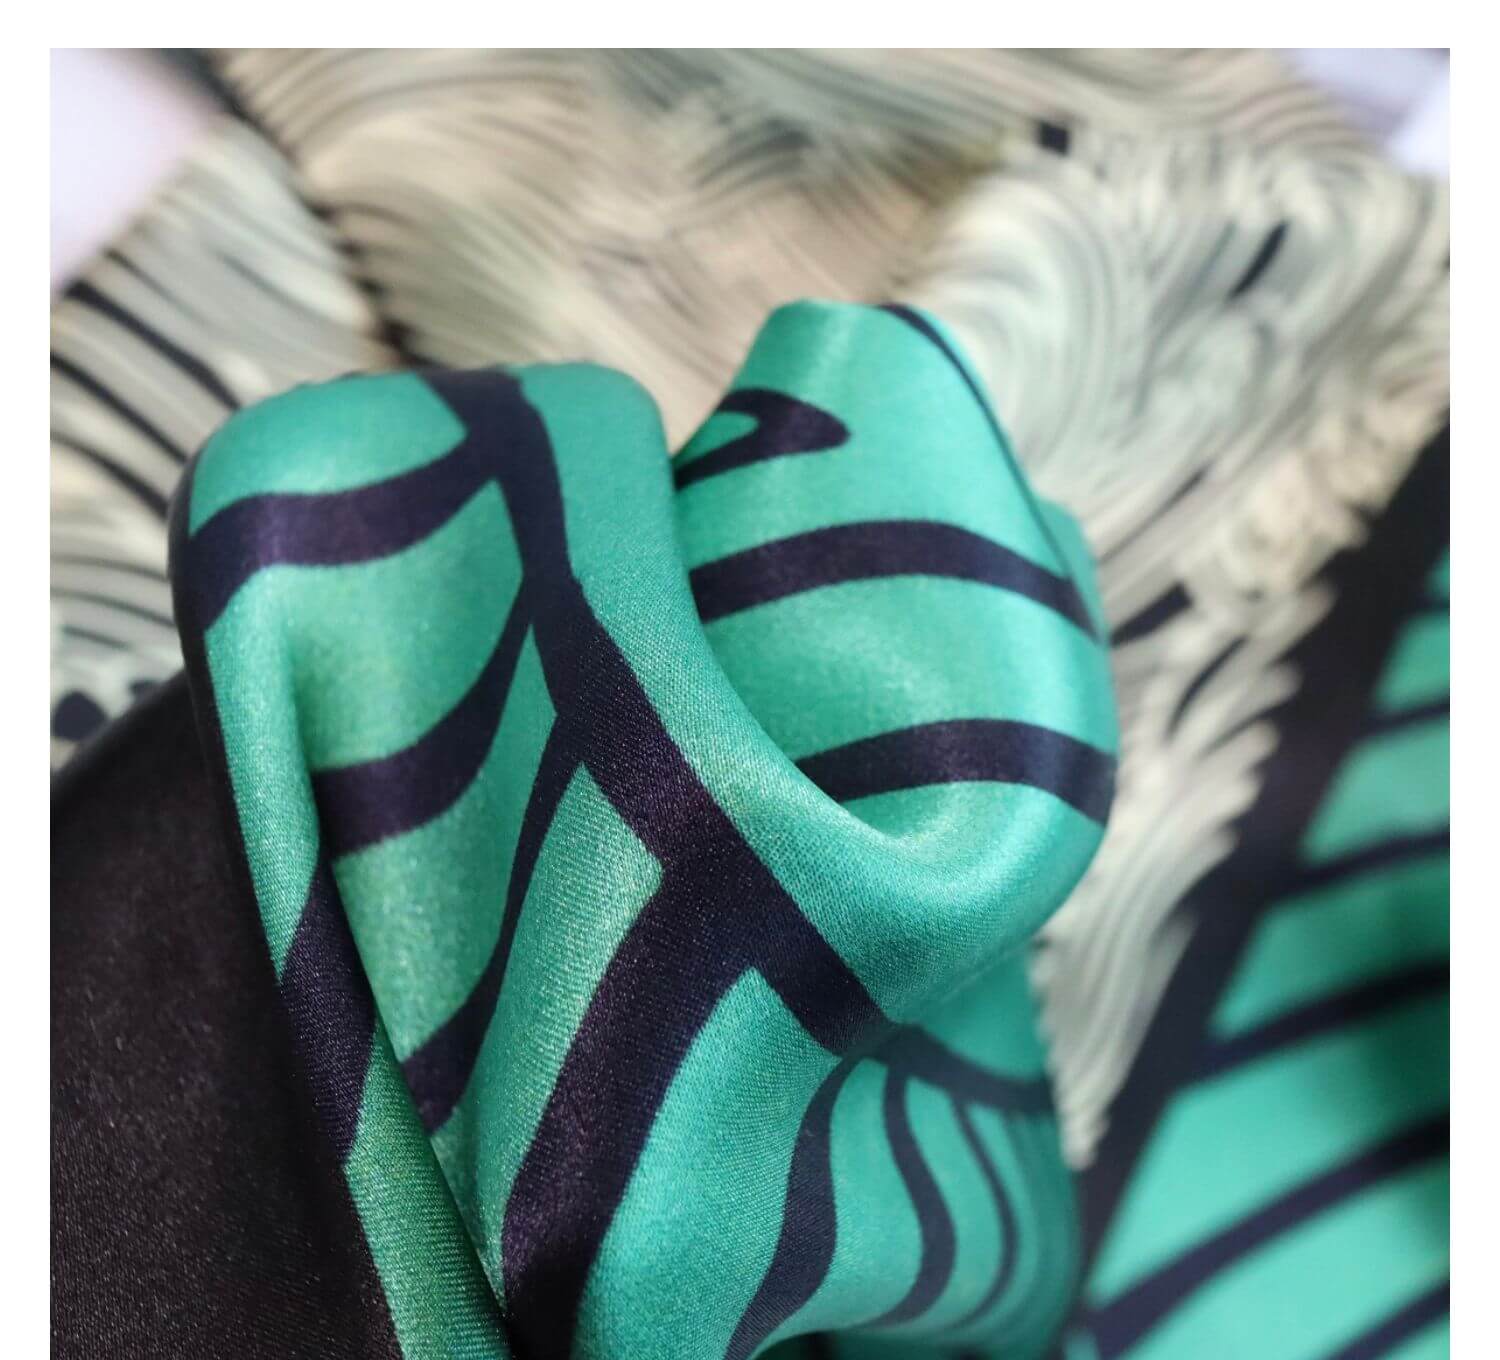 Silk Scarf- Zebra-popmoca-silk scarf 